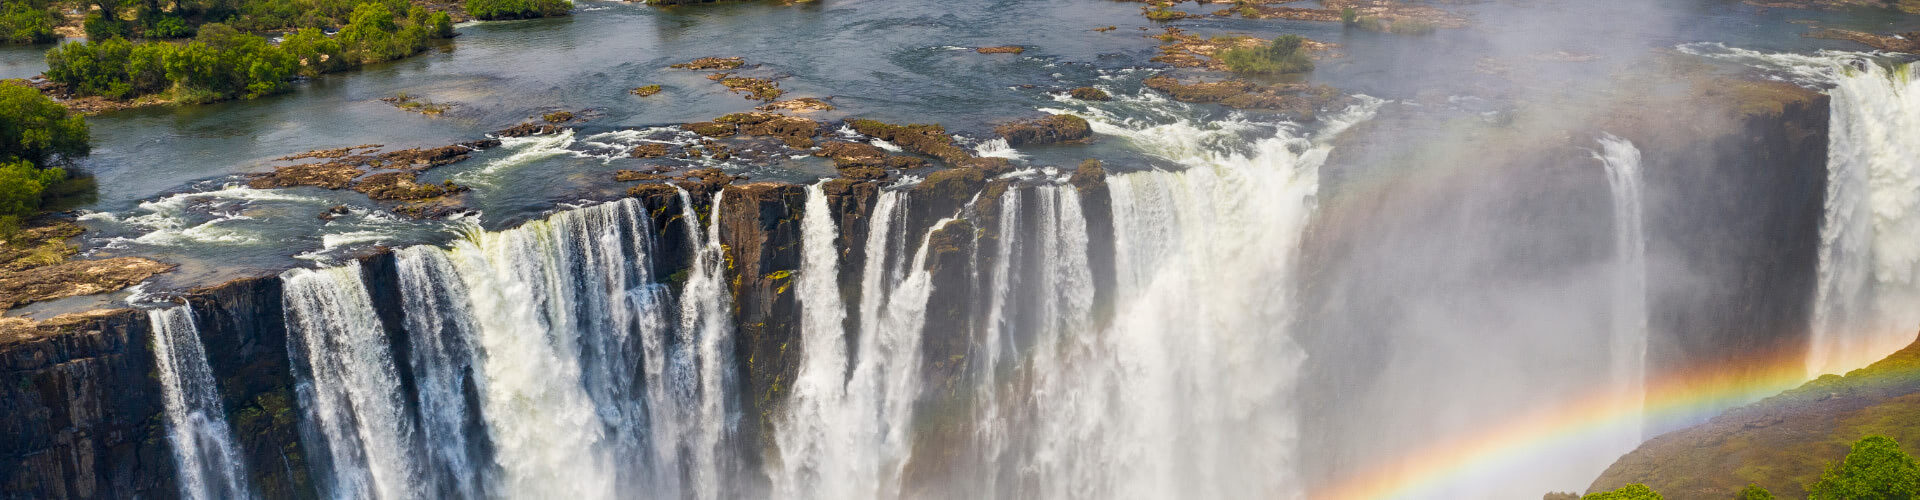 Victoria Falls Zimbabwe Zambia